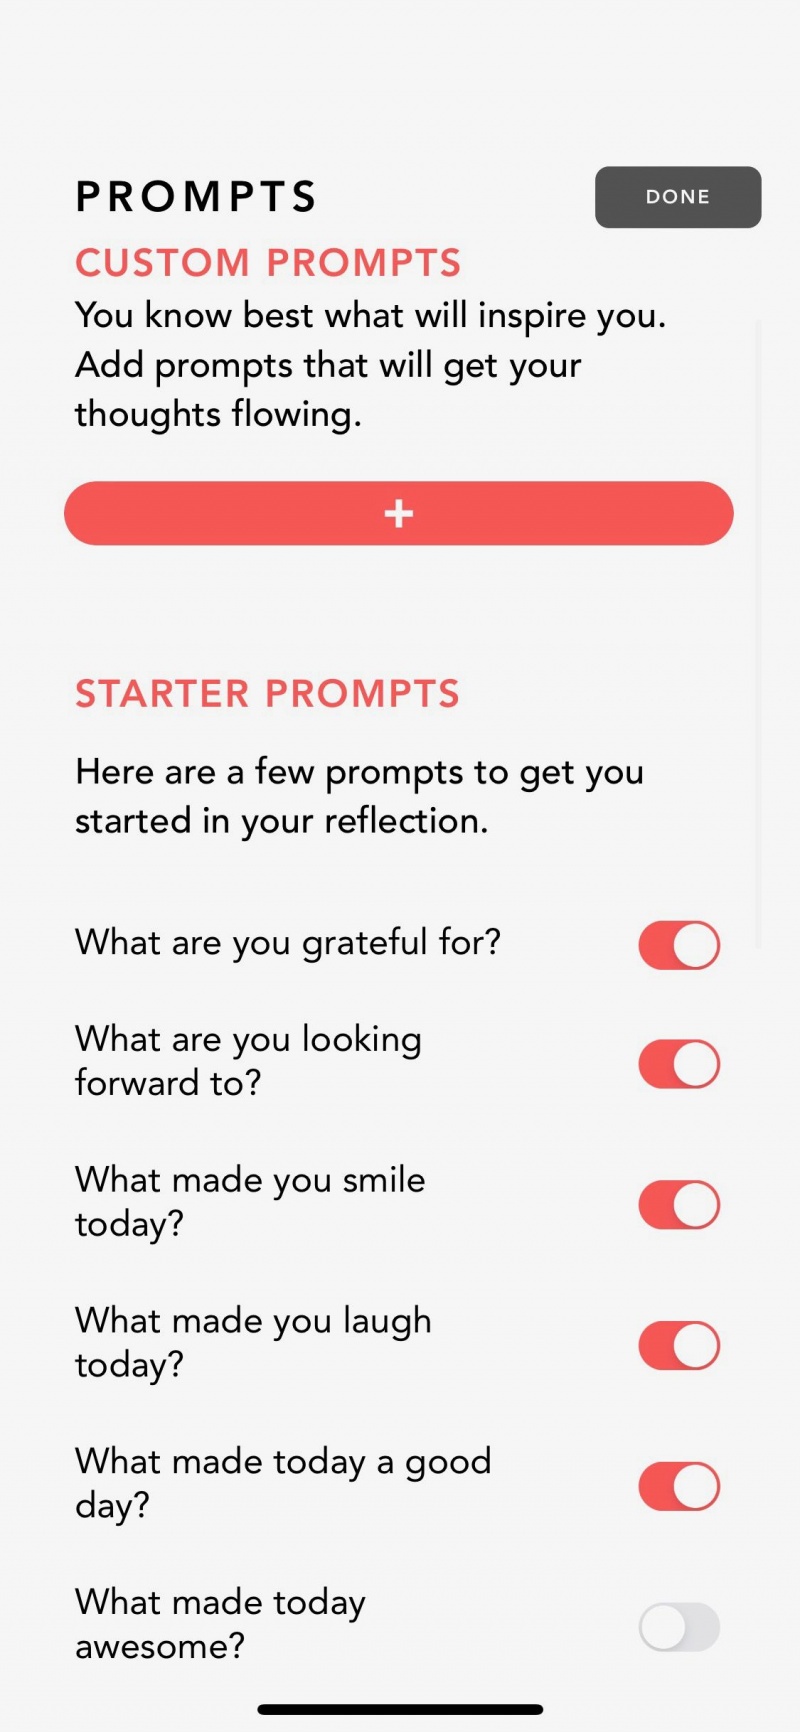   Snimka zaslona aplikacije Grateful koja prikazuje početni zaslon s uputama